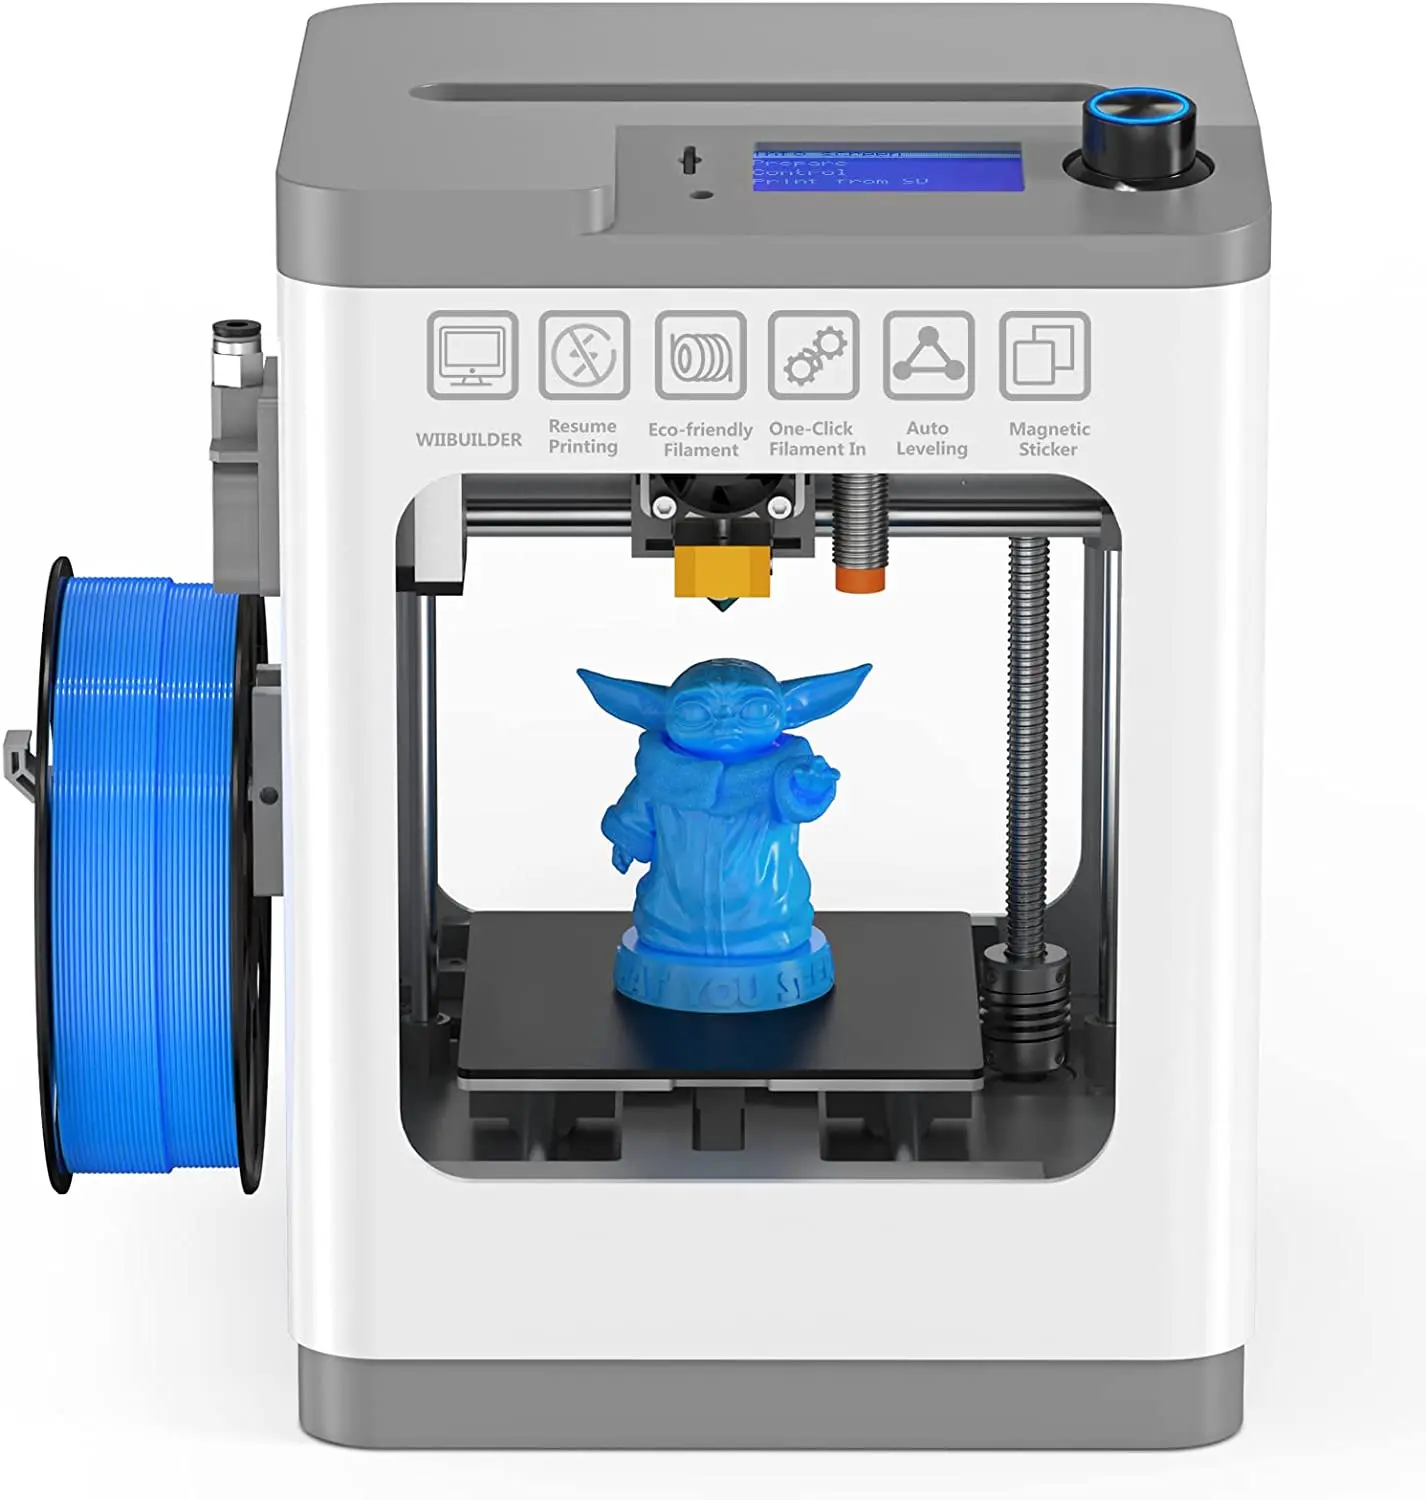 

2023 WEEFUN мини 3D-принтер, FDM 3D-принтер с функцией возобновления печати, краткое руководство, полностью собранный, самовыравнивающийся,